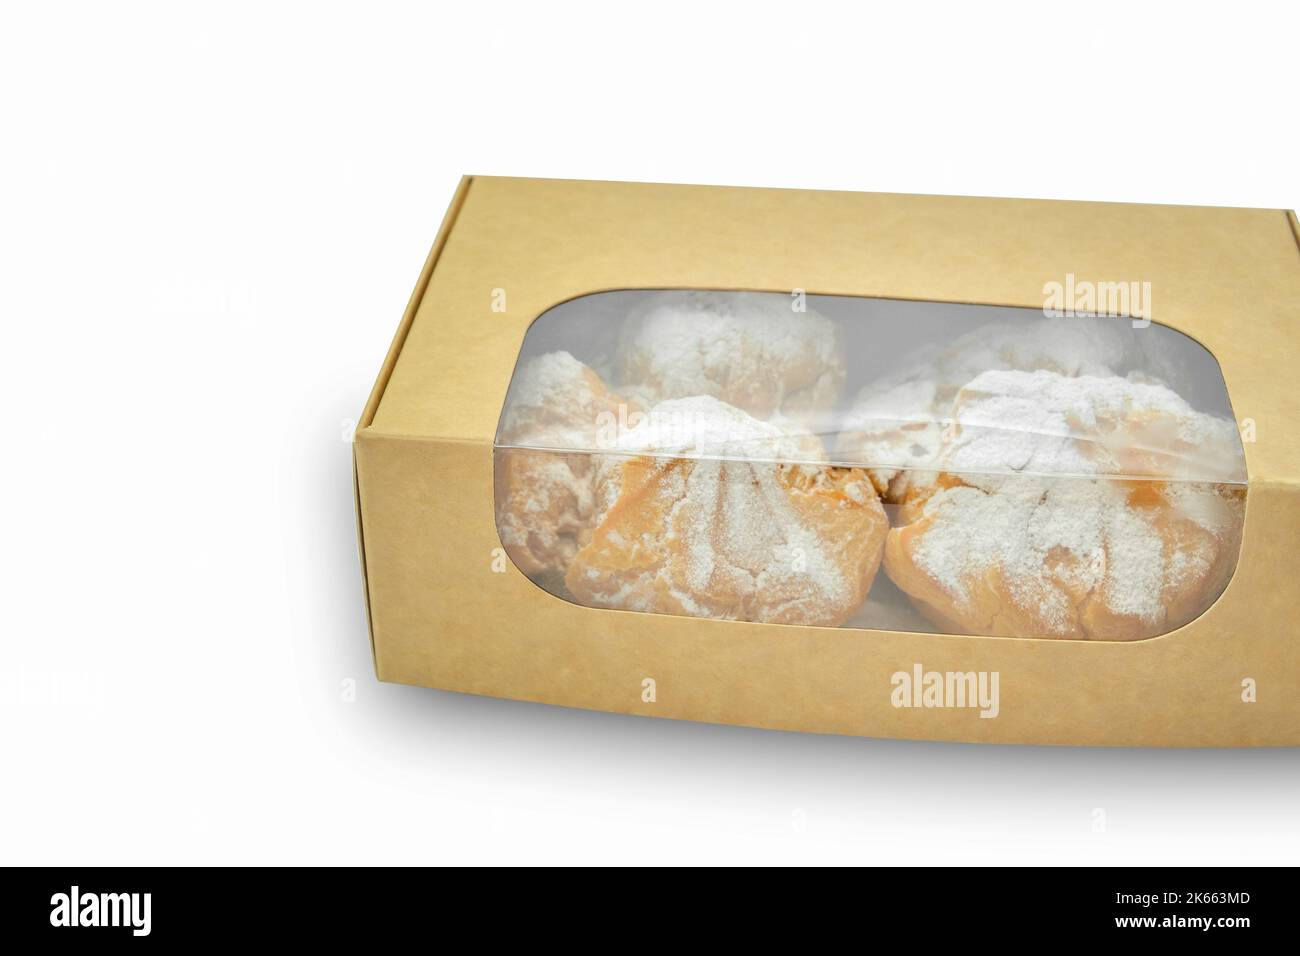 Boîte alimentaire en carton pour la vente et la livraison de produits de  boulangerie. Boîte en carton écologique pour plats à emporter avec gâteaux  de boulangerie Photo Stock - Alamy